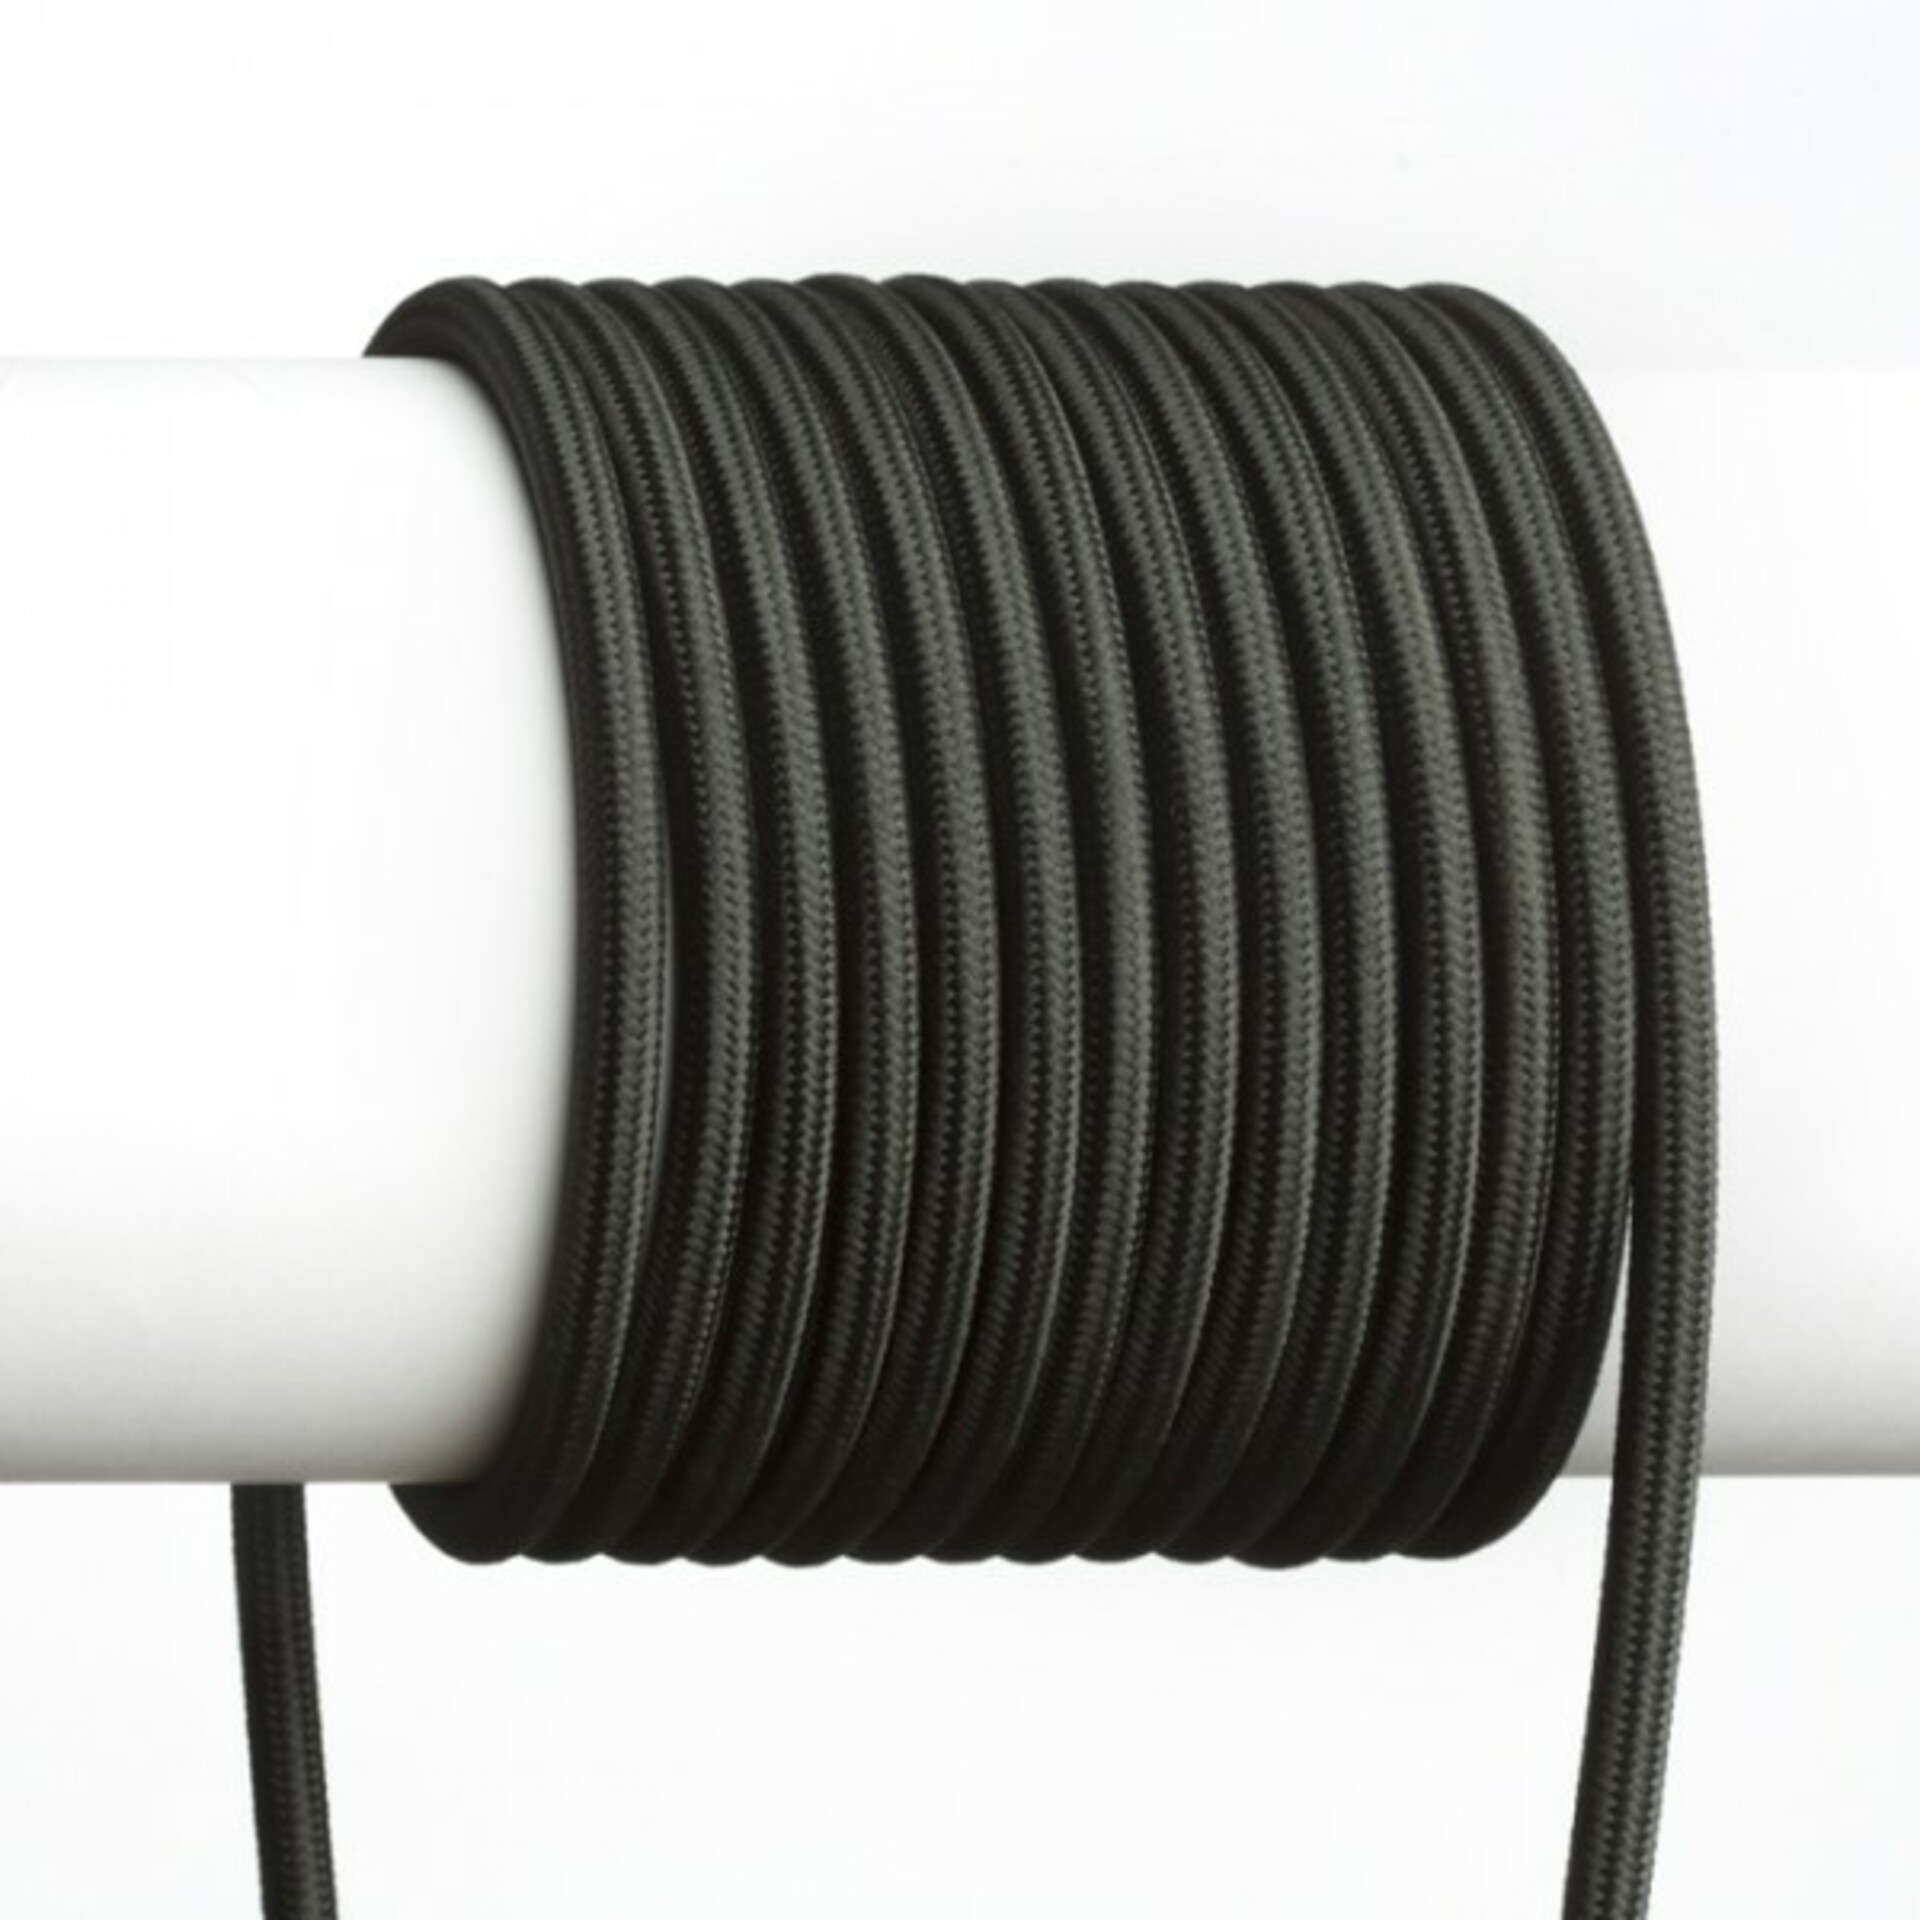 Levně RENDL FIT 3X0,75 1bm textilní kabel černá R12222